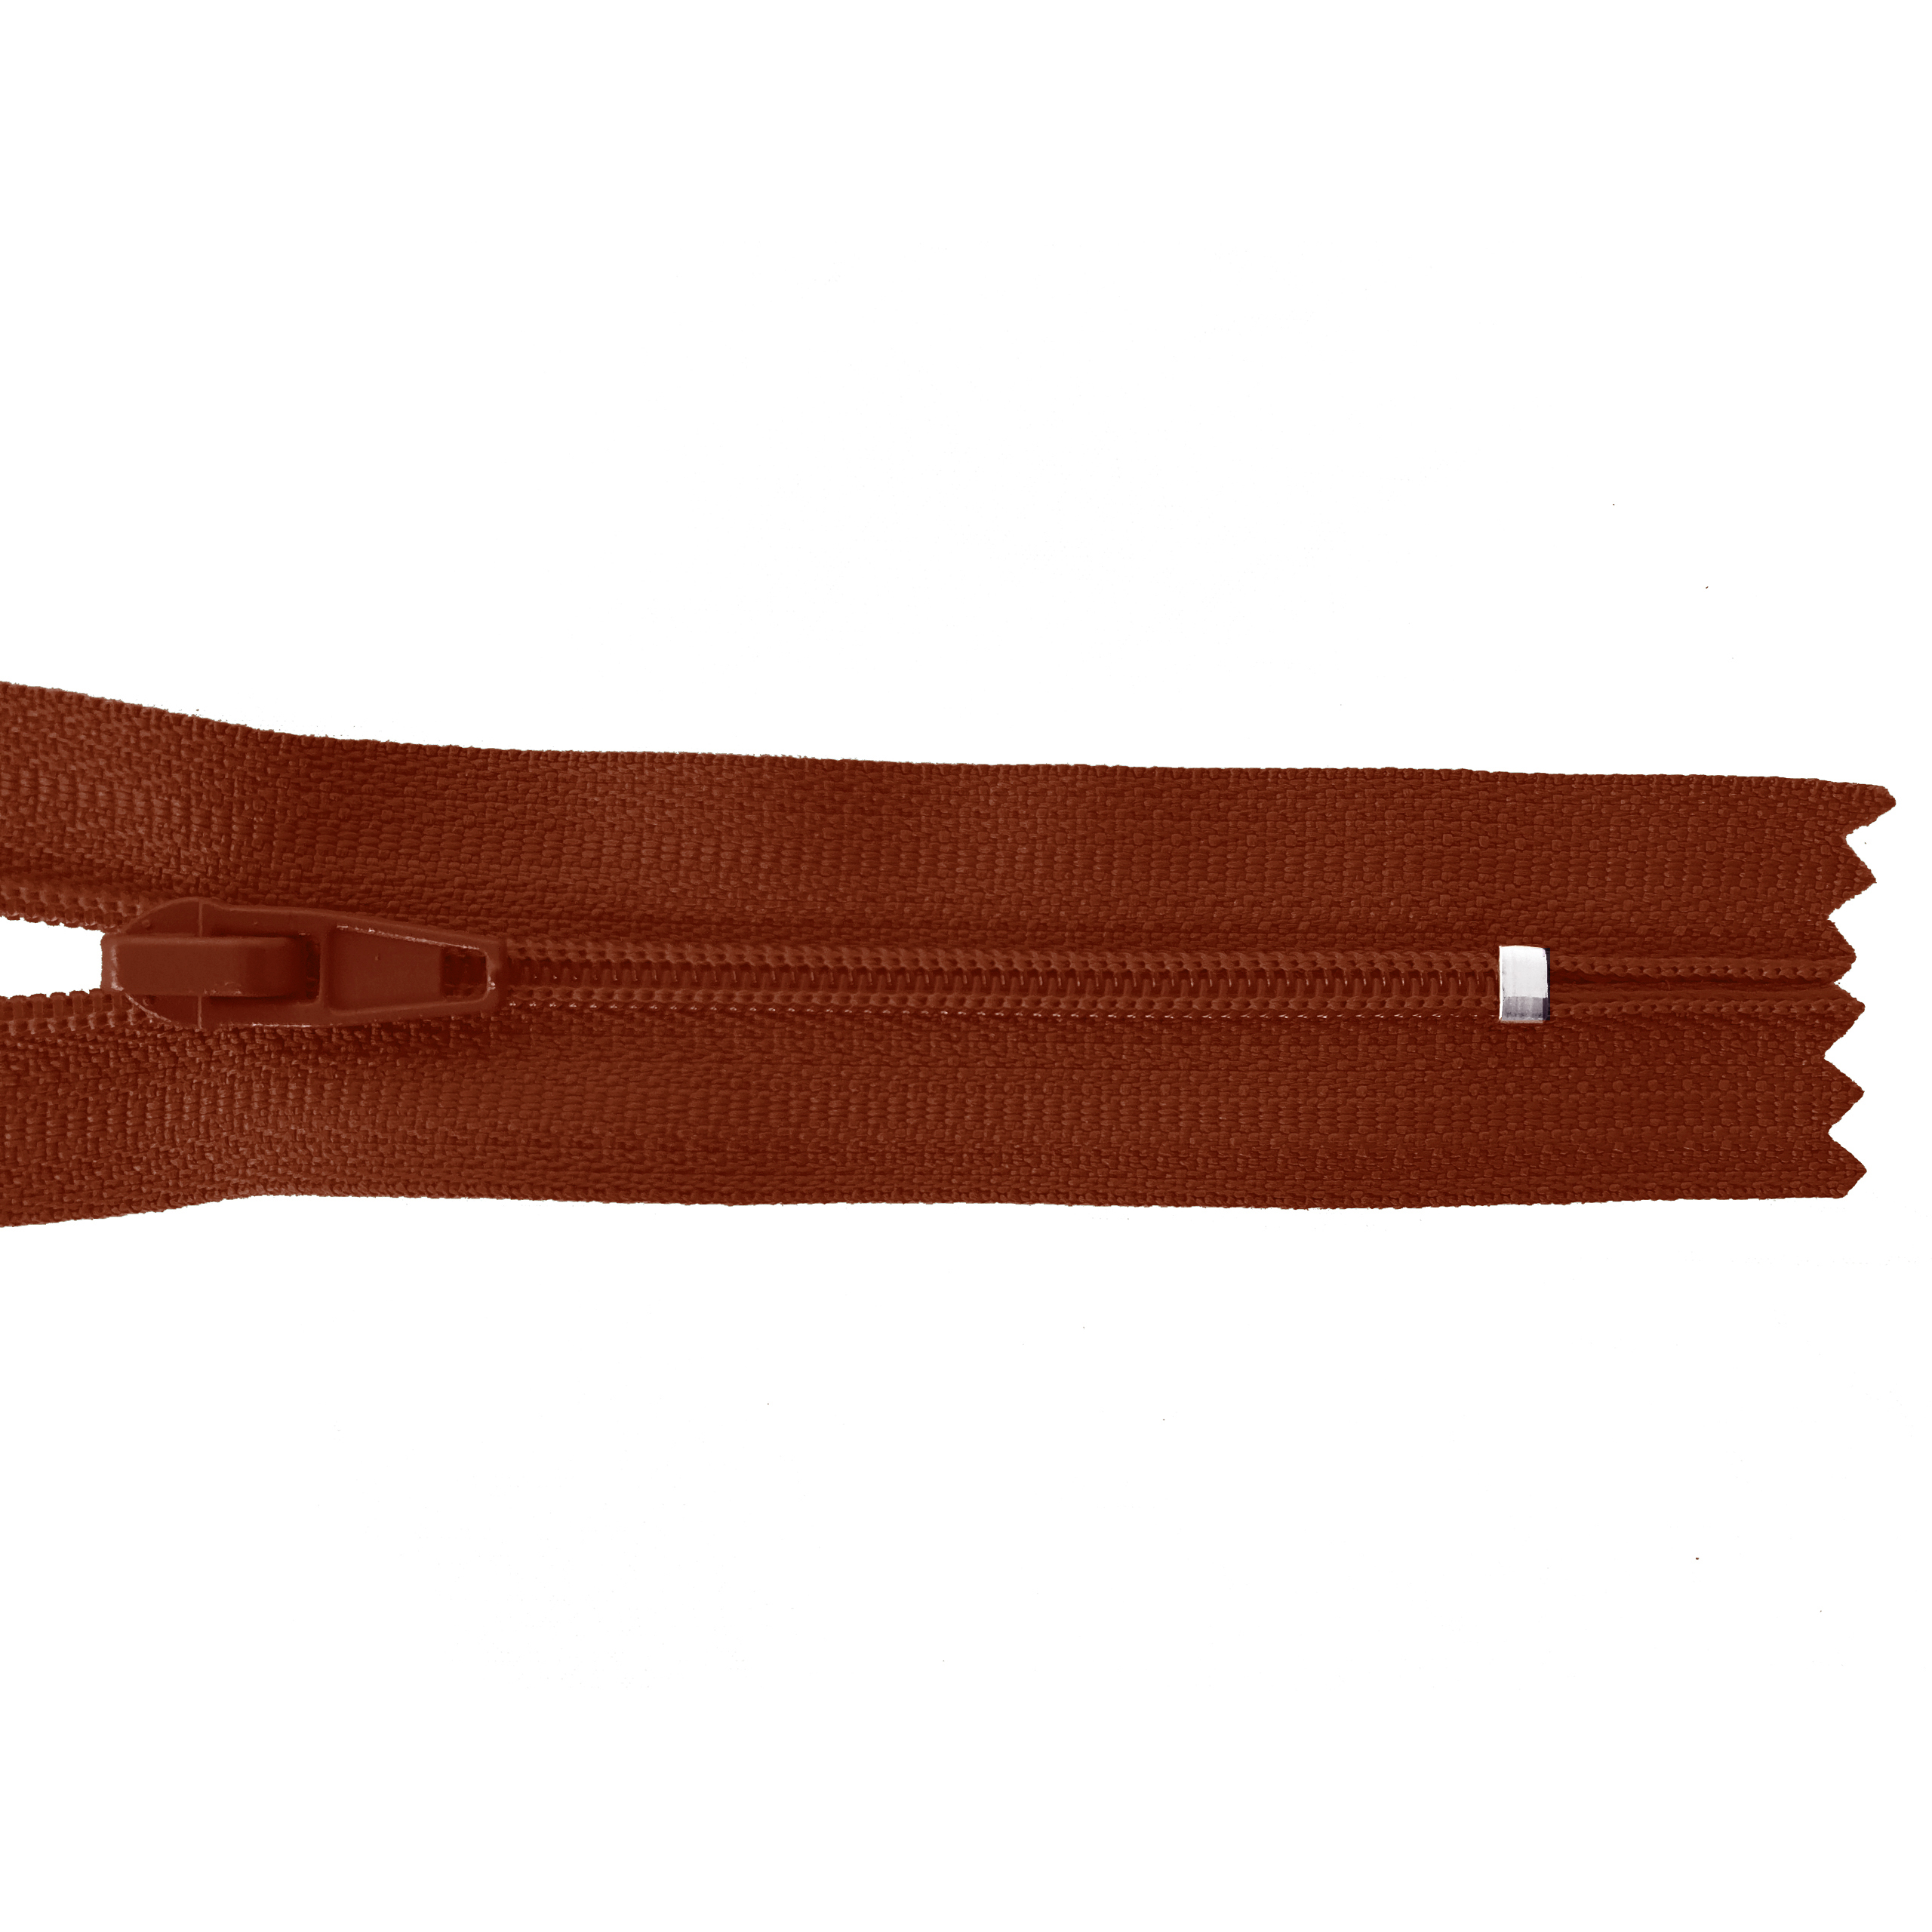 Reißverschluss 20cm, nicht teilbar, PES-Spirale fein, braun-orange, hochwertiger Marken-Reißverschluss von Rubi/Barcelona